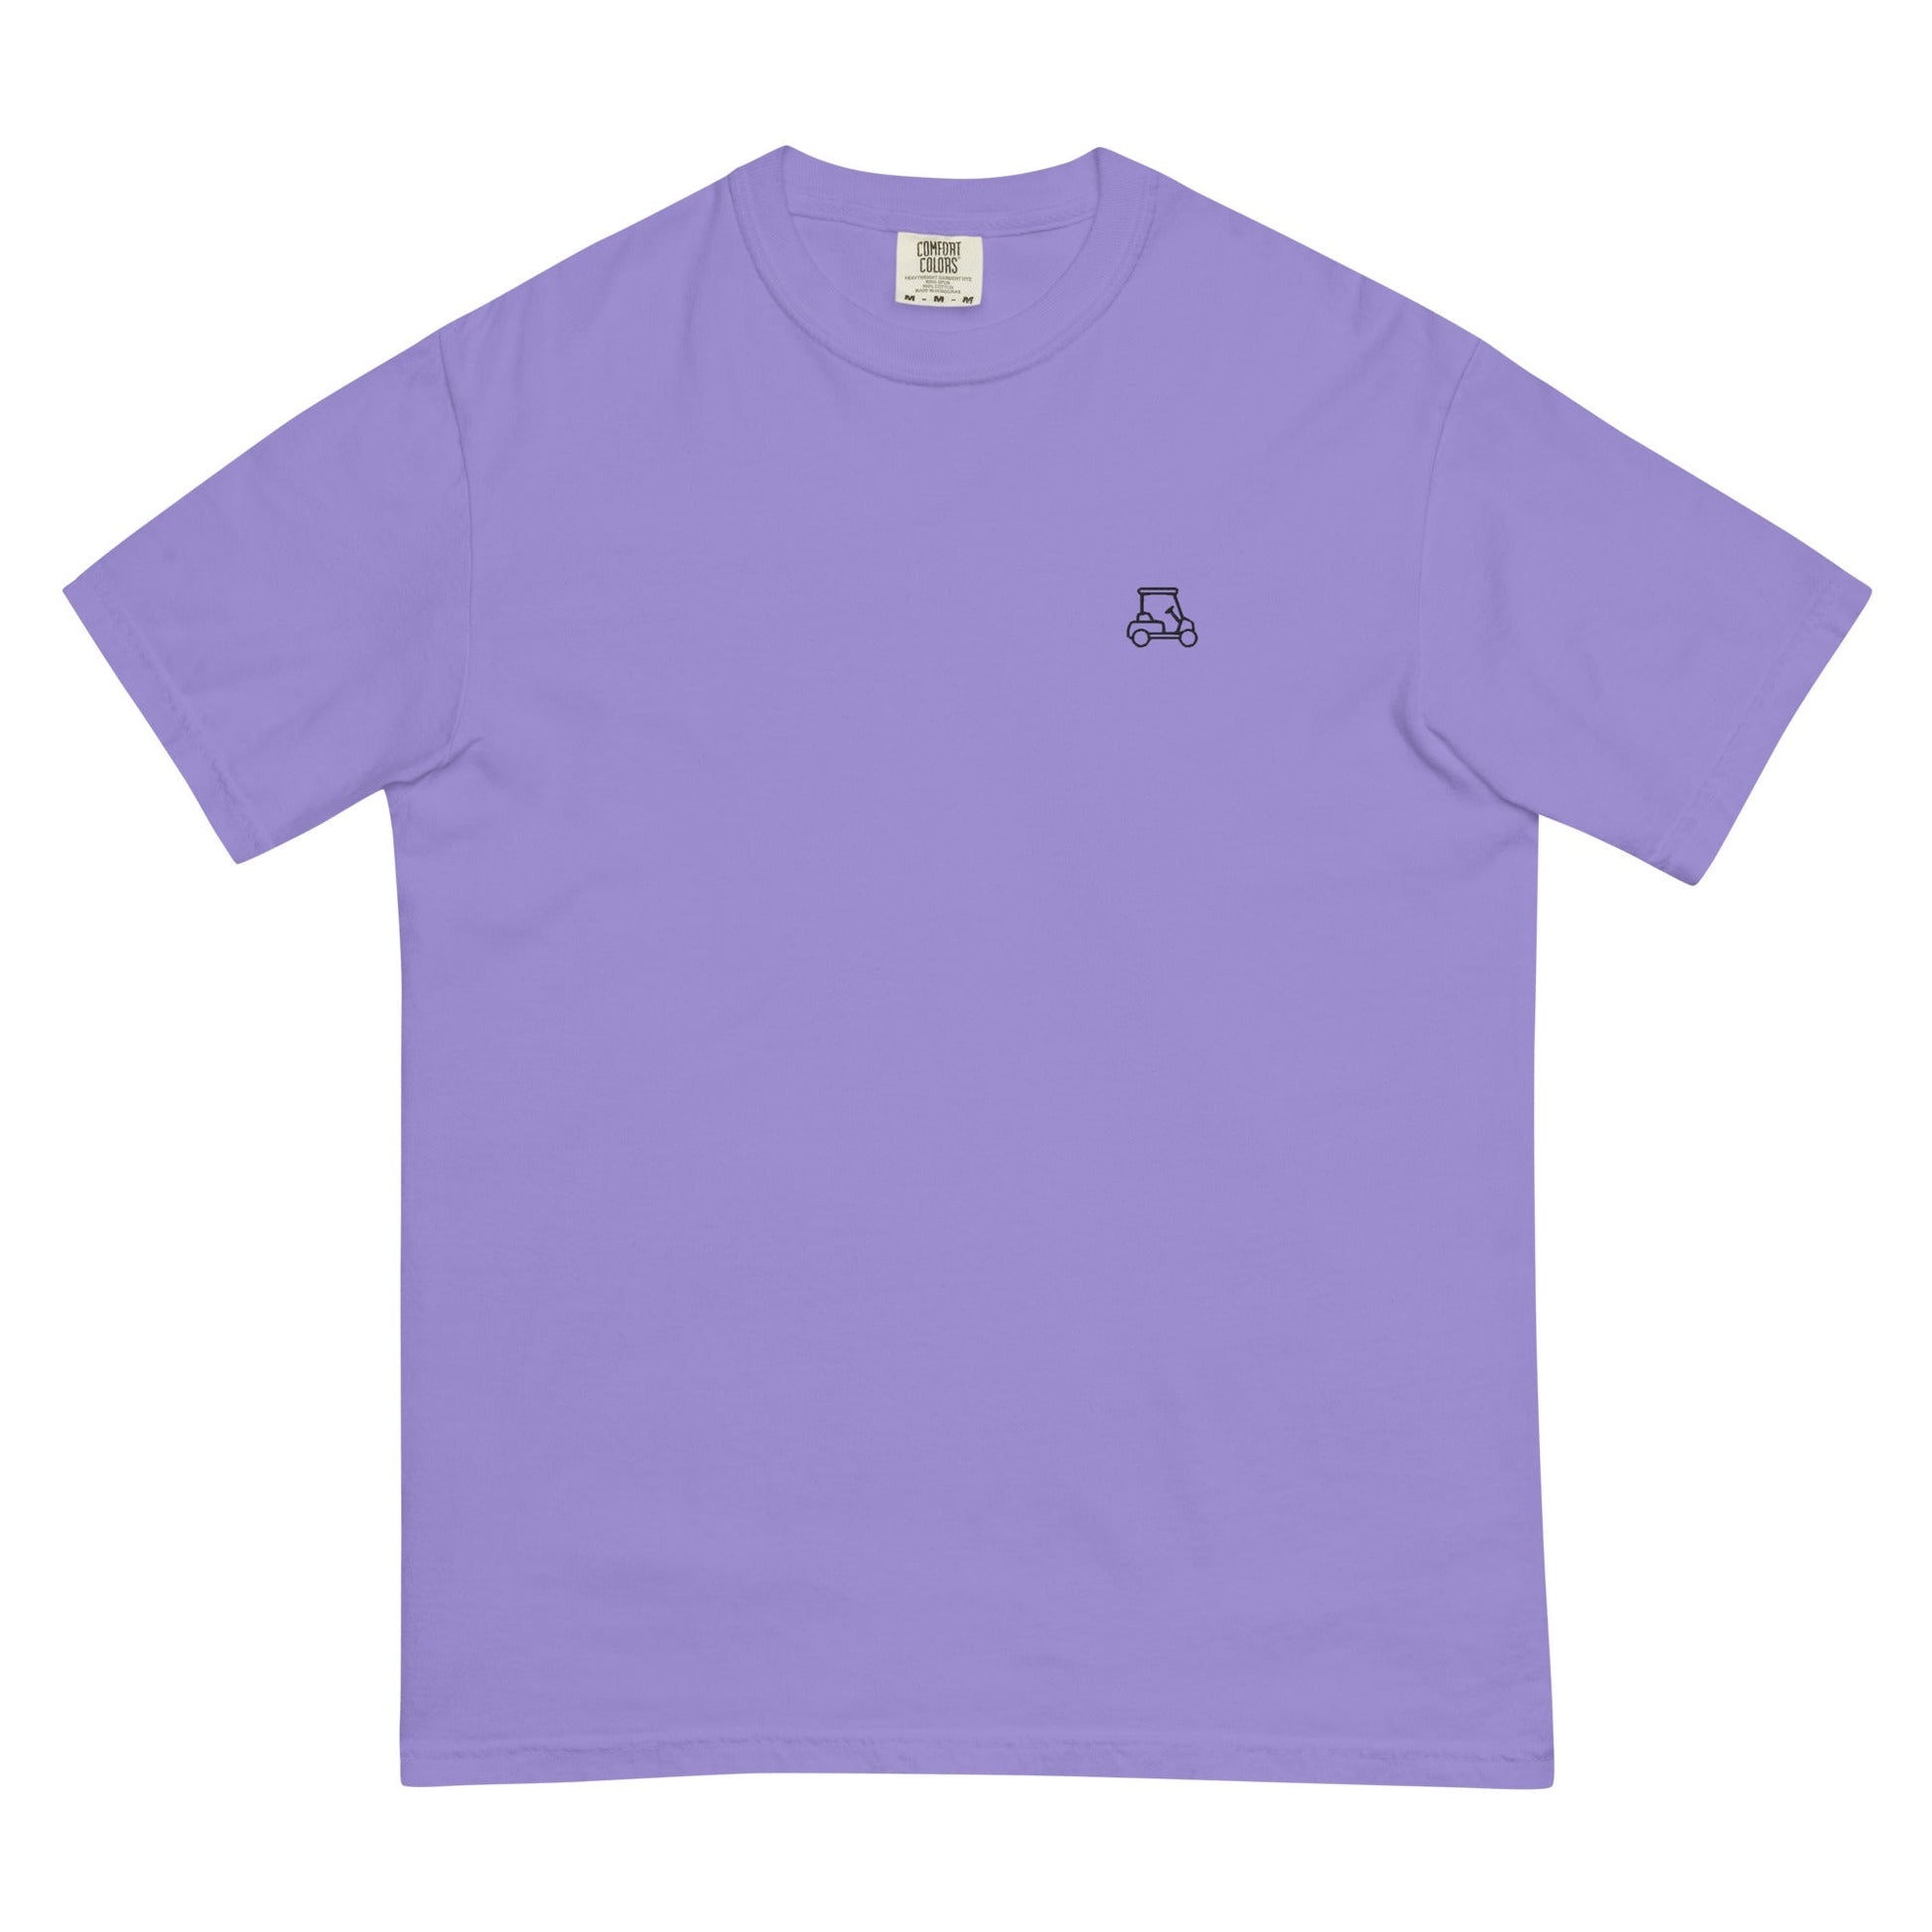 Lavender Caddy's Heavyweight T-shirt-Caddy Golf